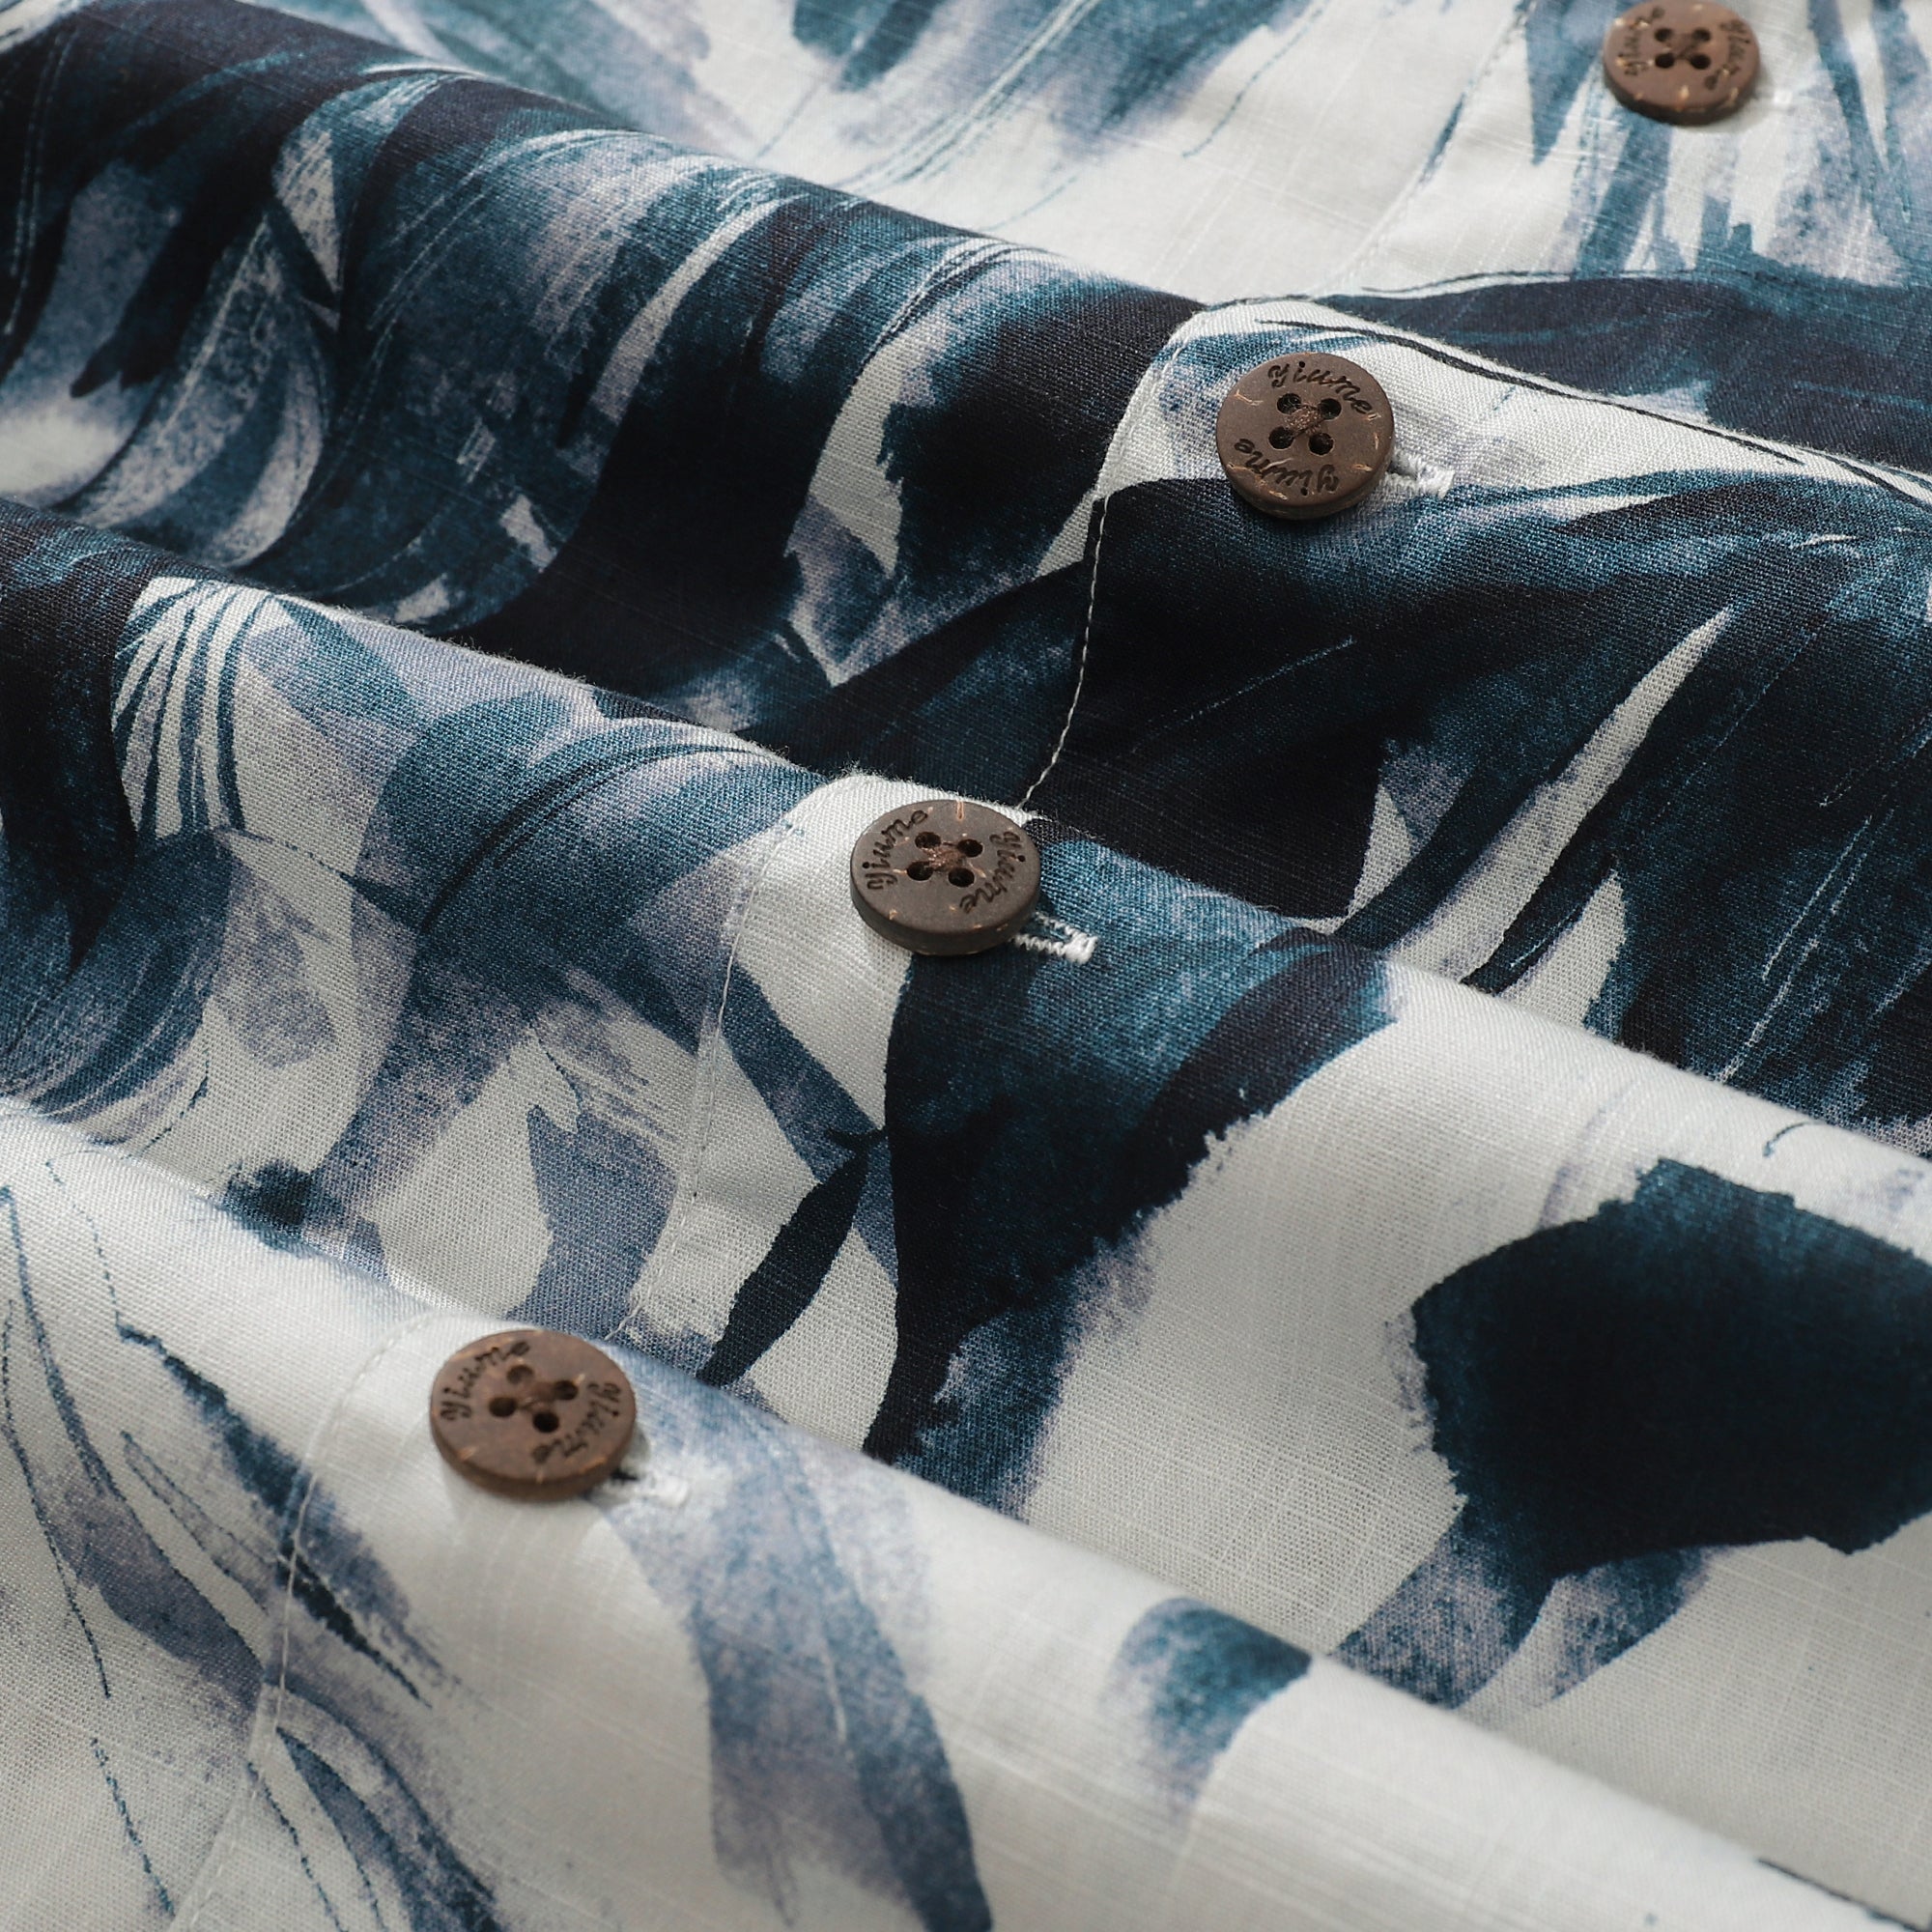 Camisa Aloha para hombre, camisa de campamento de manga corta de algodón con pintura de tinta y hojas de bambú